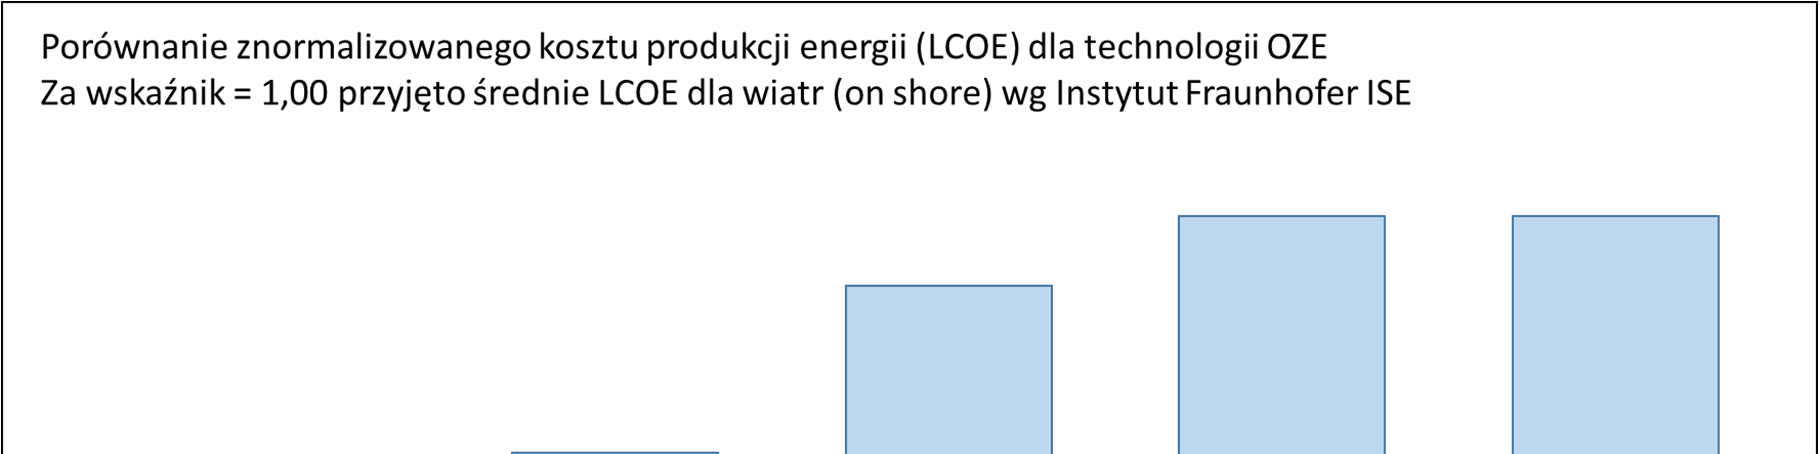 Zastanawiające i niepokojące jest, że analitycy z Polskiego Komitetu Energii Elektrycznej, prezentując dane o koszcie produkcji energii z biomasy technologii bardzo drogiej dopuścili się pewnej